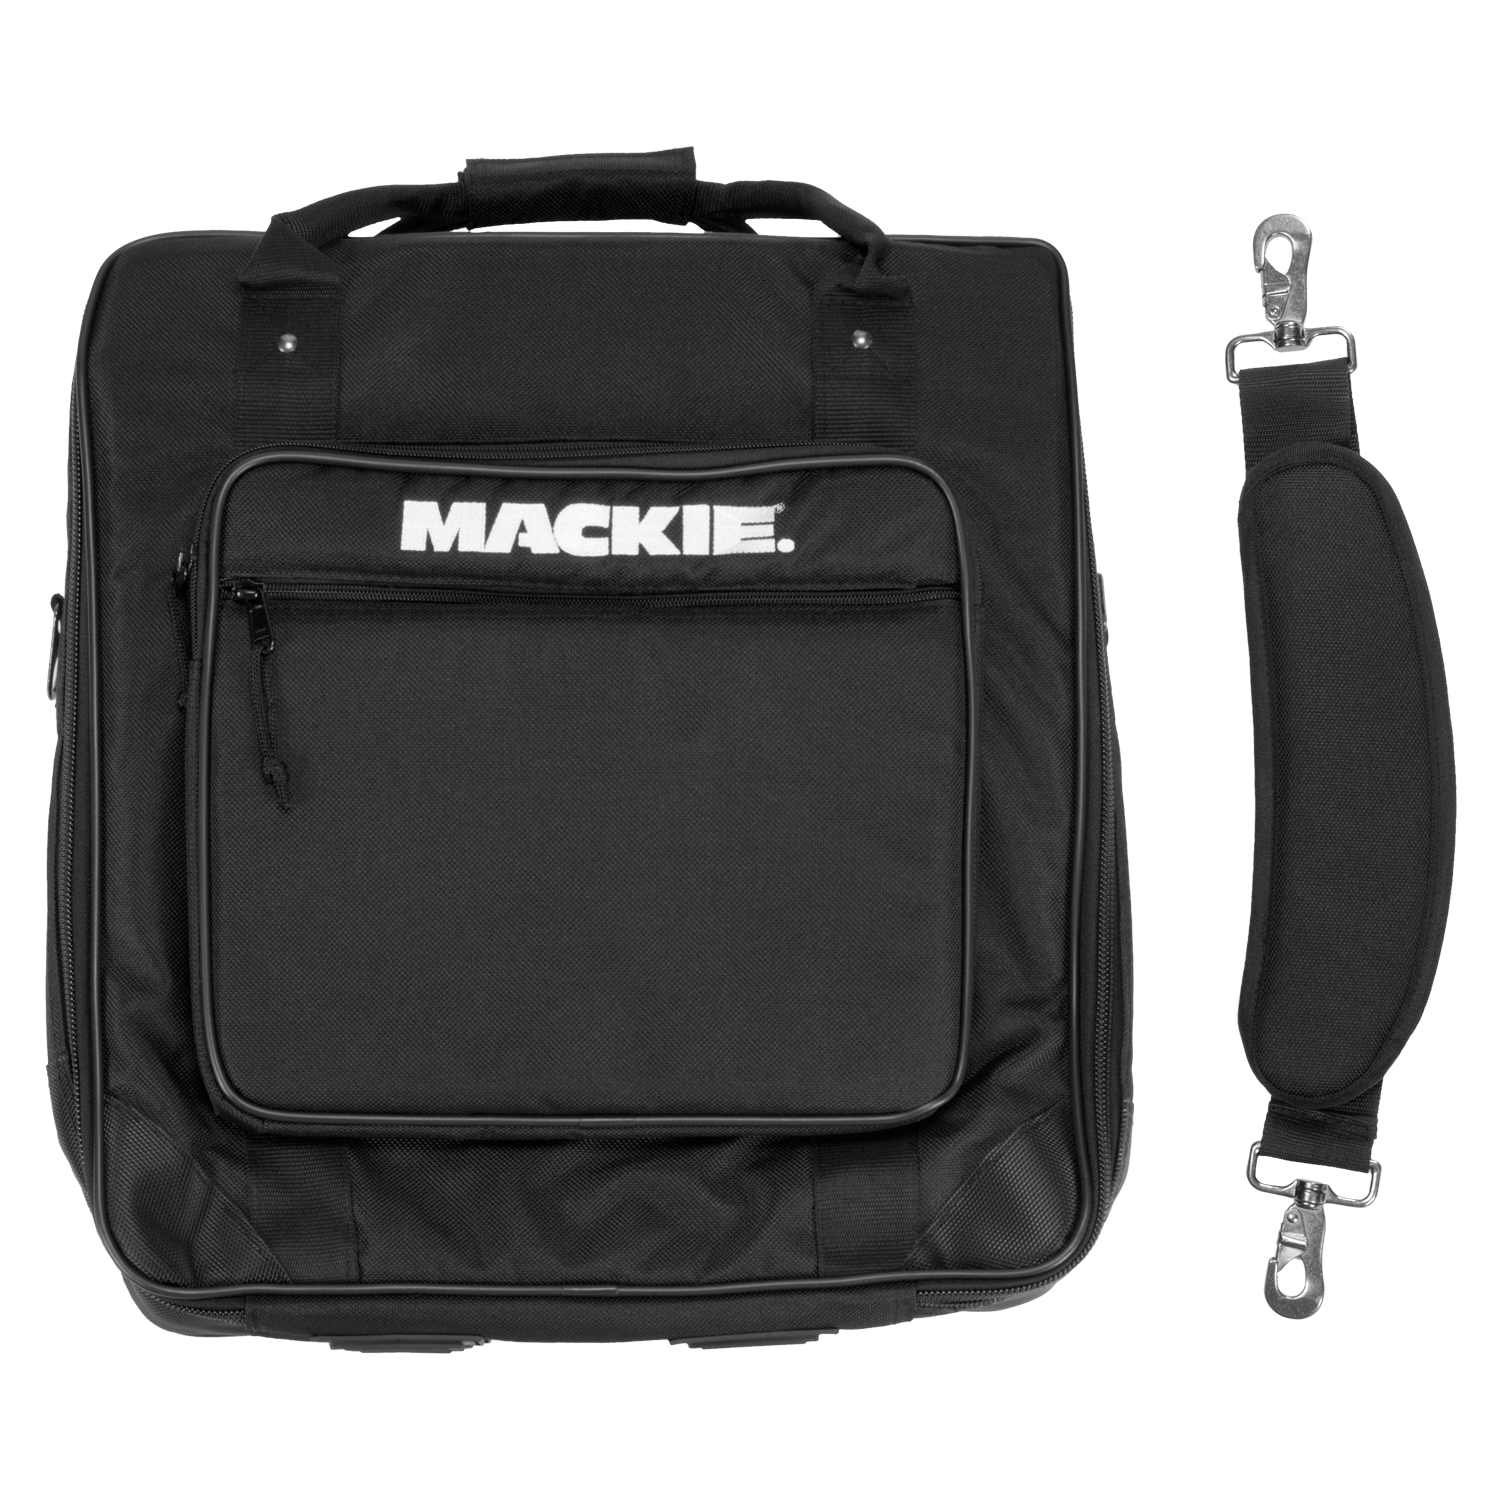 Mackie 1604VLZ4 Mixer Bag